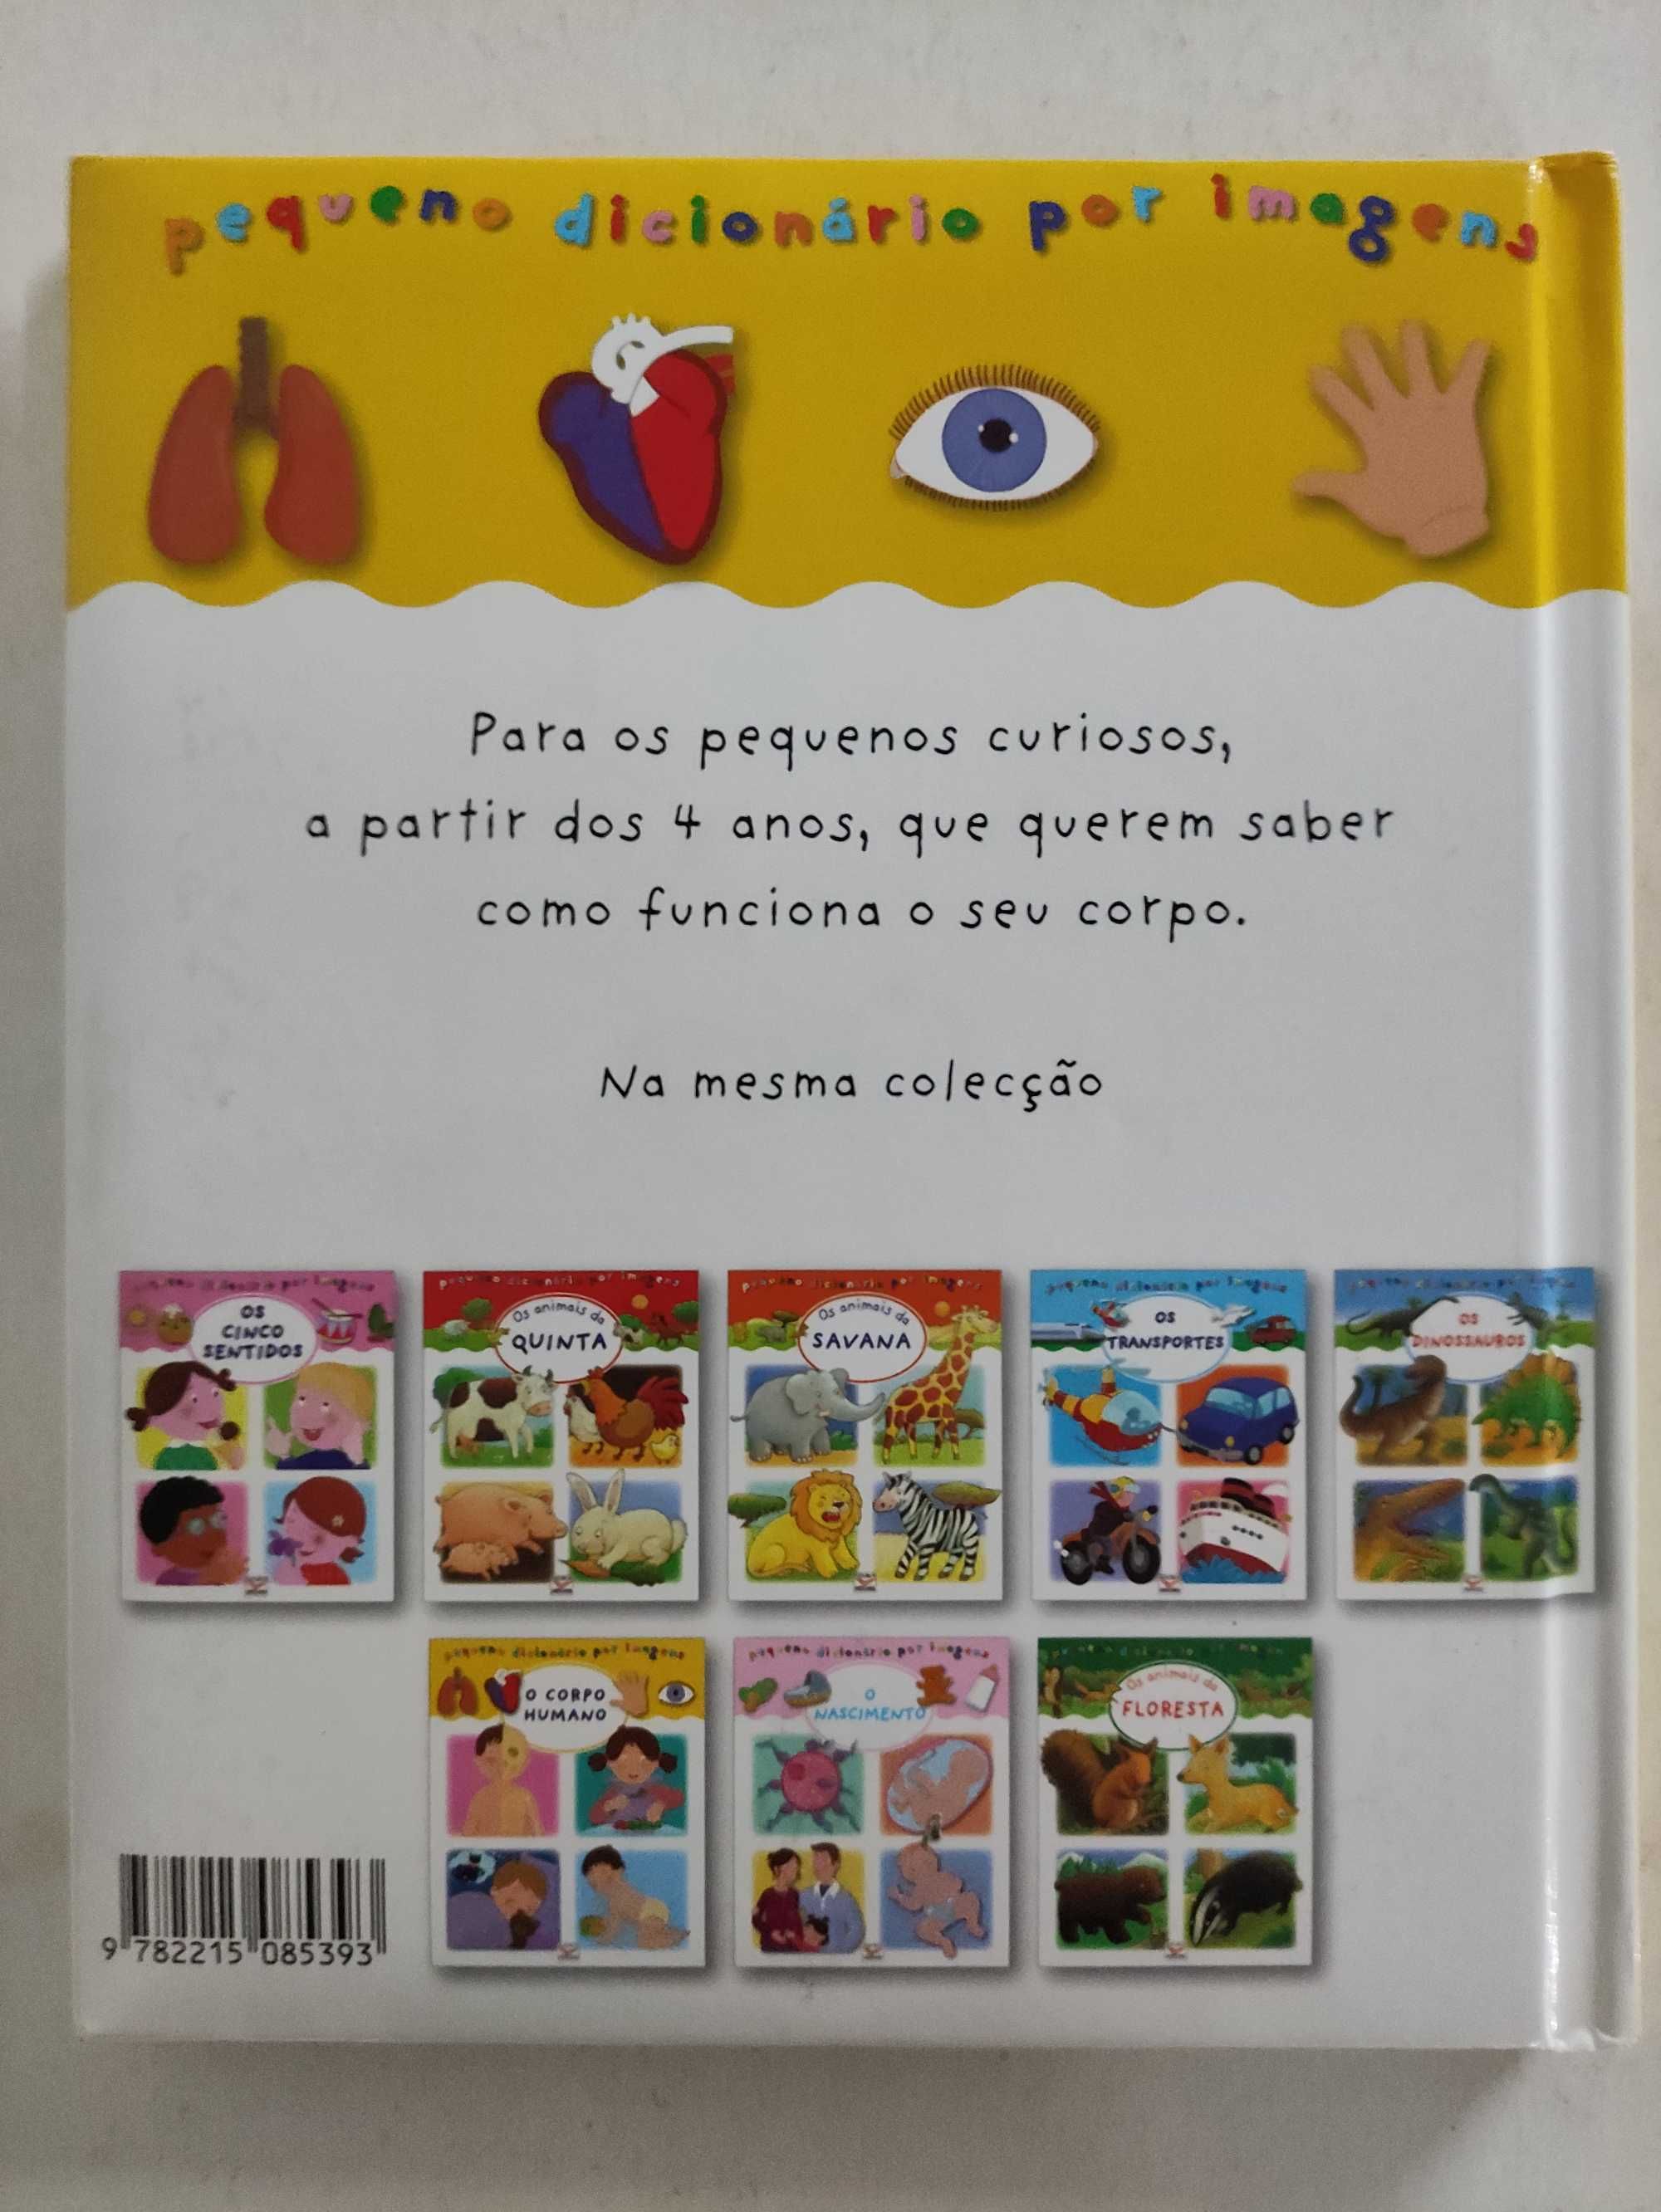 Pequeno Dicionário por Imagens: O Corpo Humano | livro infantil